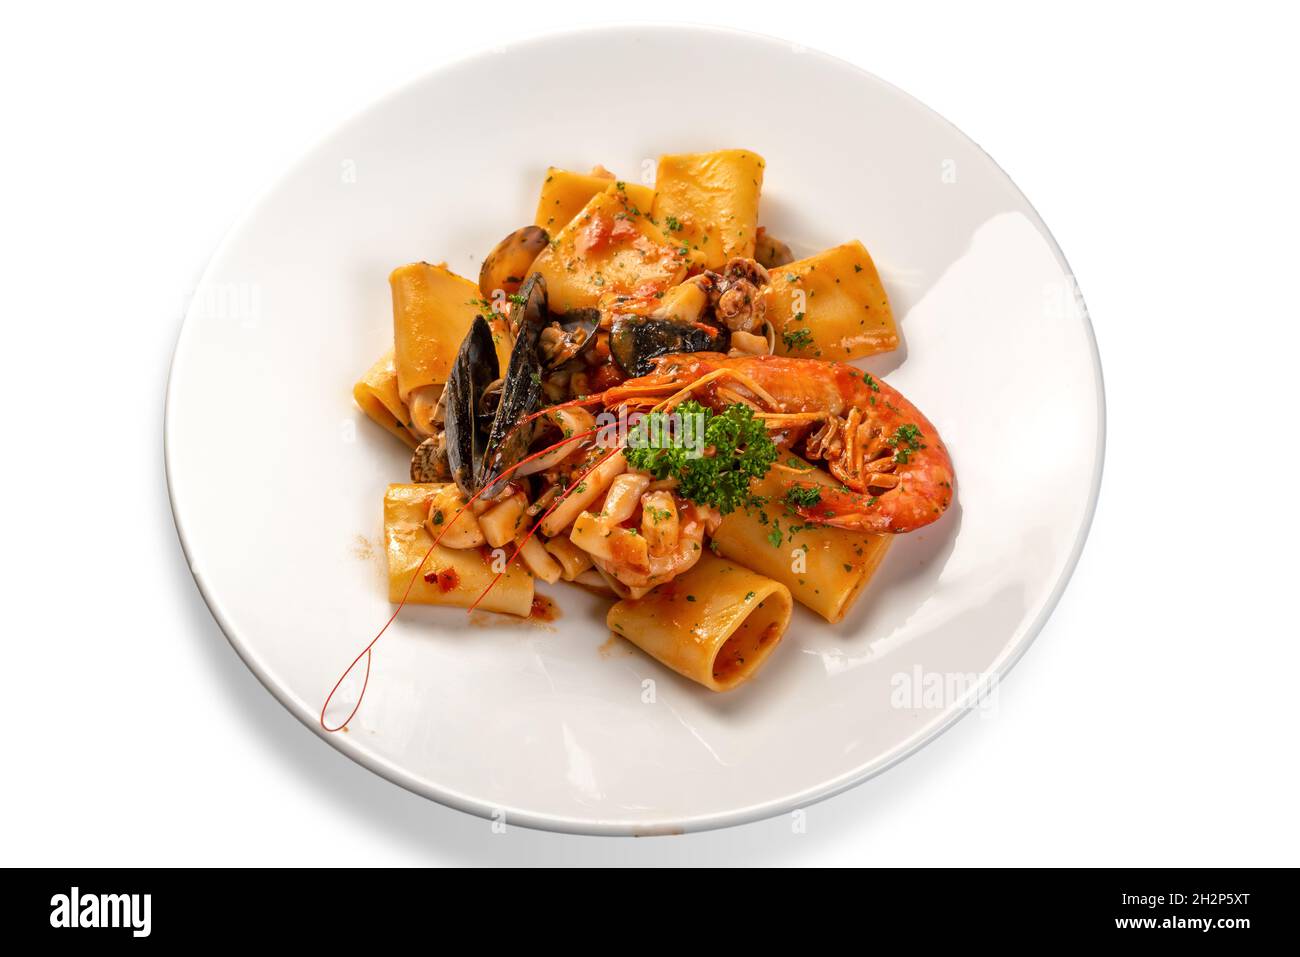 Paccheri Pasta mit Meeresfrüchten, typisch italienische Pasta mit Tomatensauce, Muscheln, Muscheln, Tintenfisch und Garnelen auf weißem Teller mit Petersilie auf weiß isoliert Stockfoto